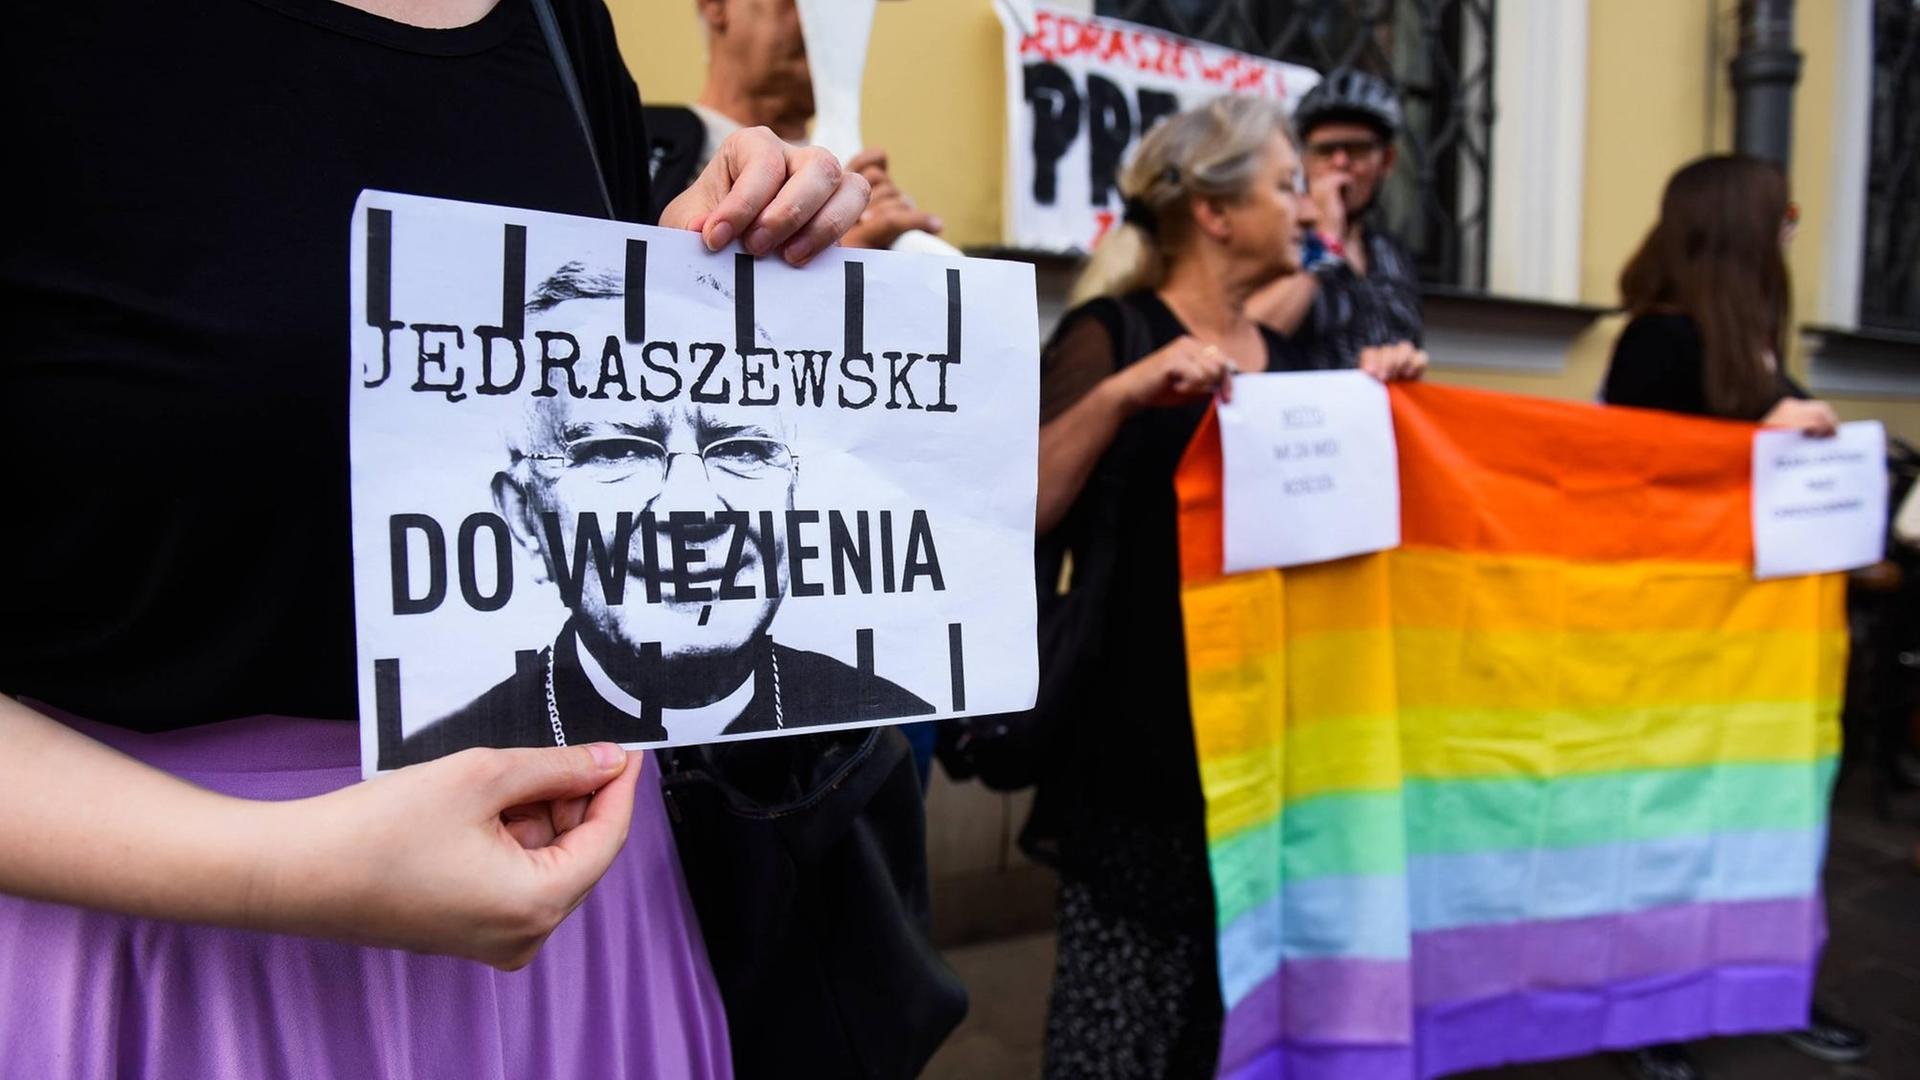 Eine Frau hält bei einer Demonstration in Krakau am 4. August 2019 ein Plakat, auf dem steht: "Jedraszewski ins Gefängnis". Menschen neben ihr halten eine Regenbogenfahne in die Höhe. Der Protest richtet sich gegen den Erzbischof von Krakau, Marek Jedraszewski, der die polnische LGBT-Bewegung mit einer Seuche verglichen hatte.